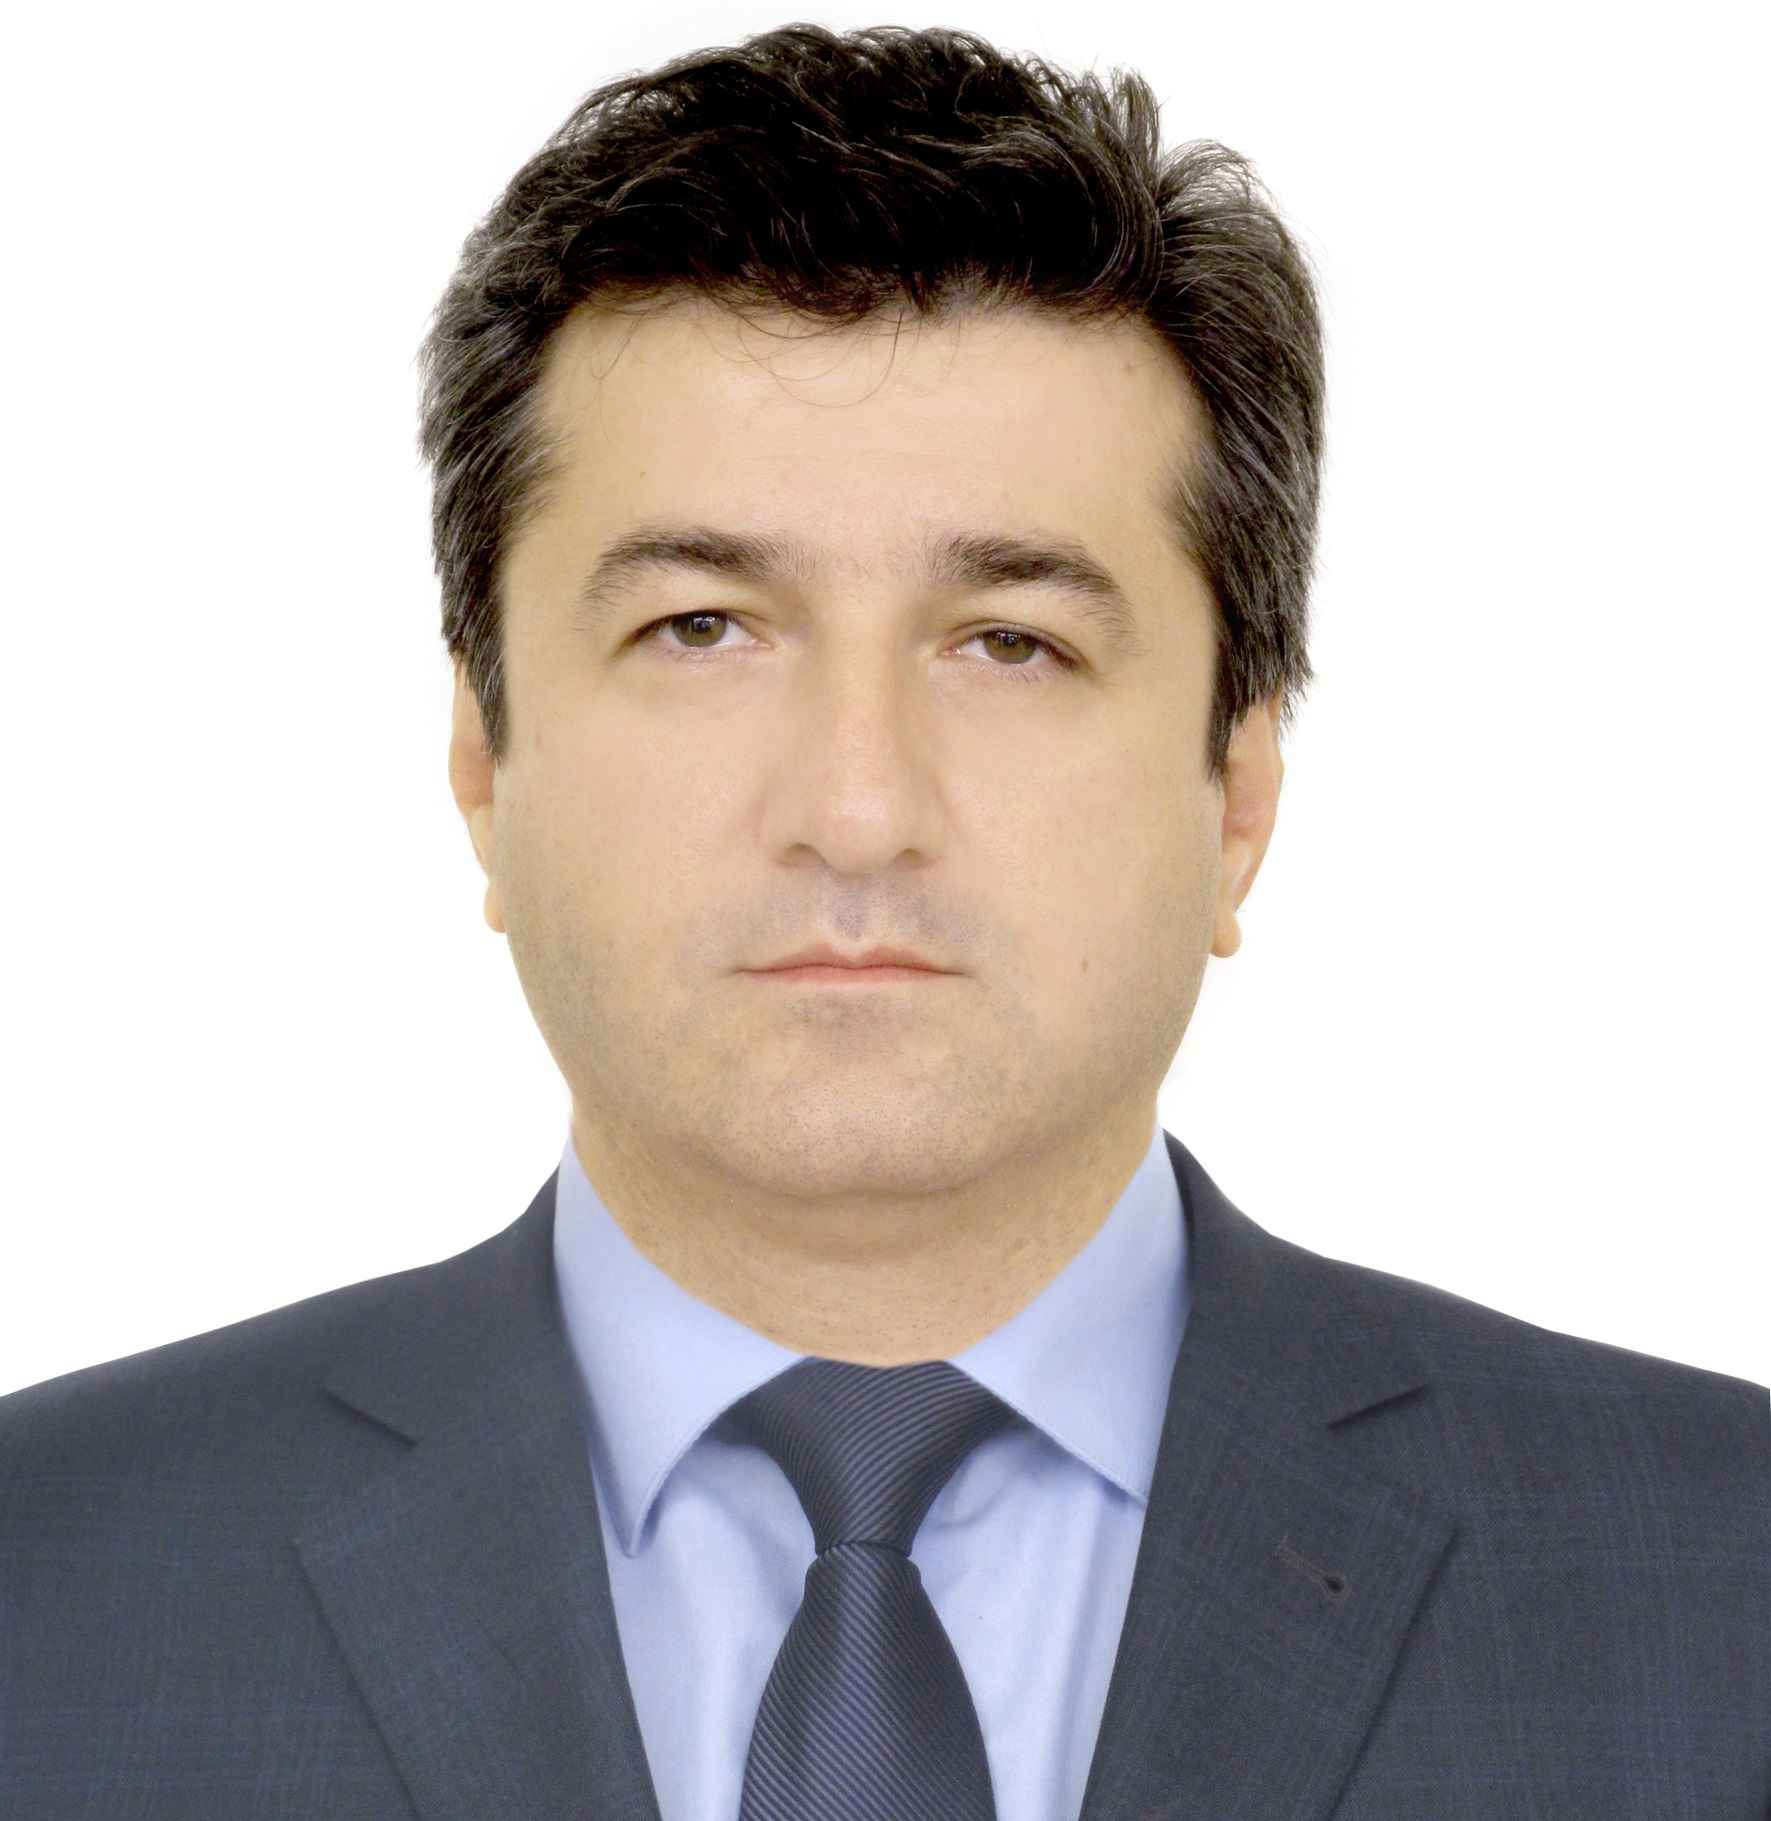 Таймураз Ахохов – вице-премьер правительства КБР